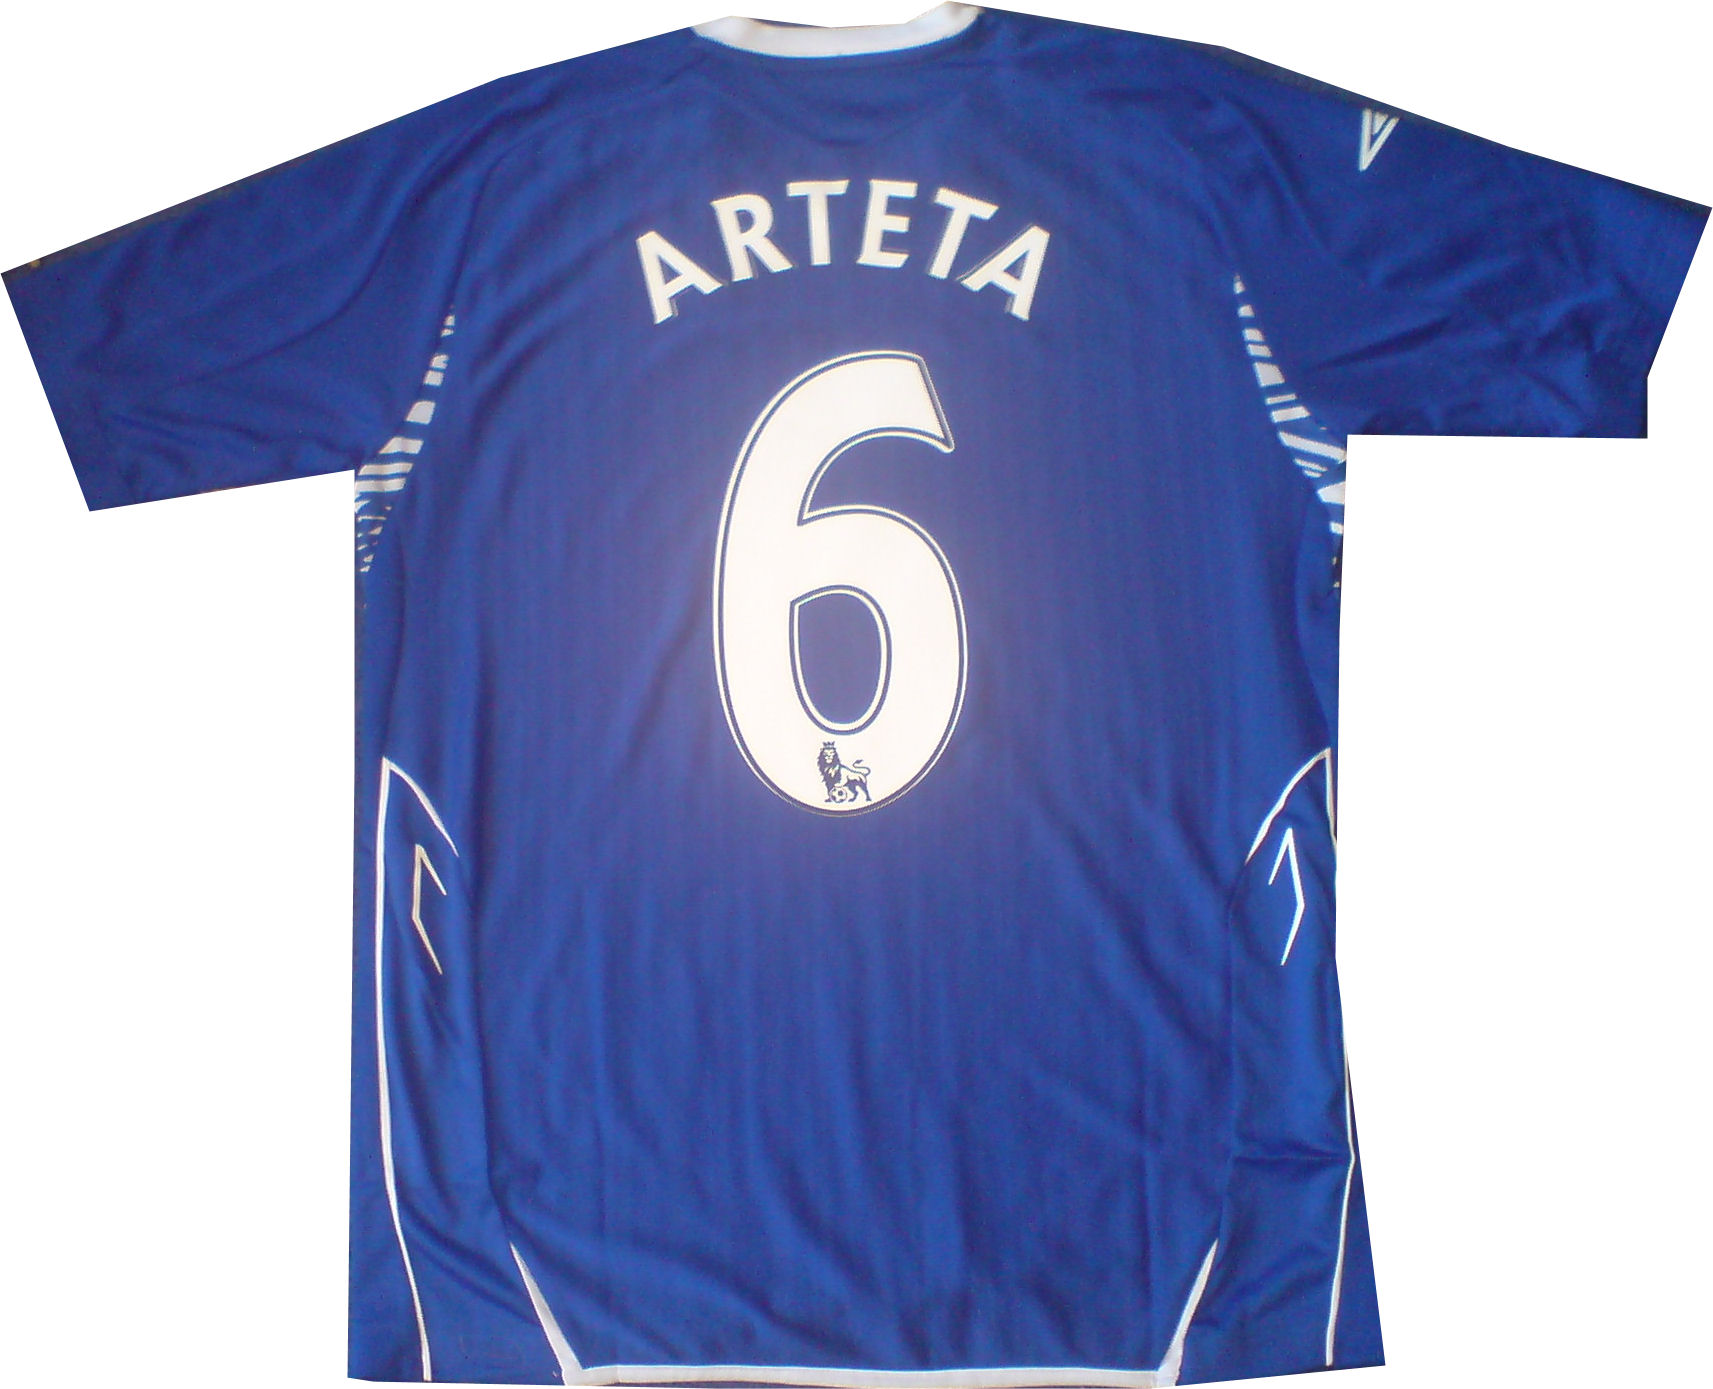 Umbro 07-08 Everton home (Arteta 6)